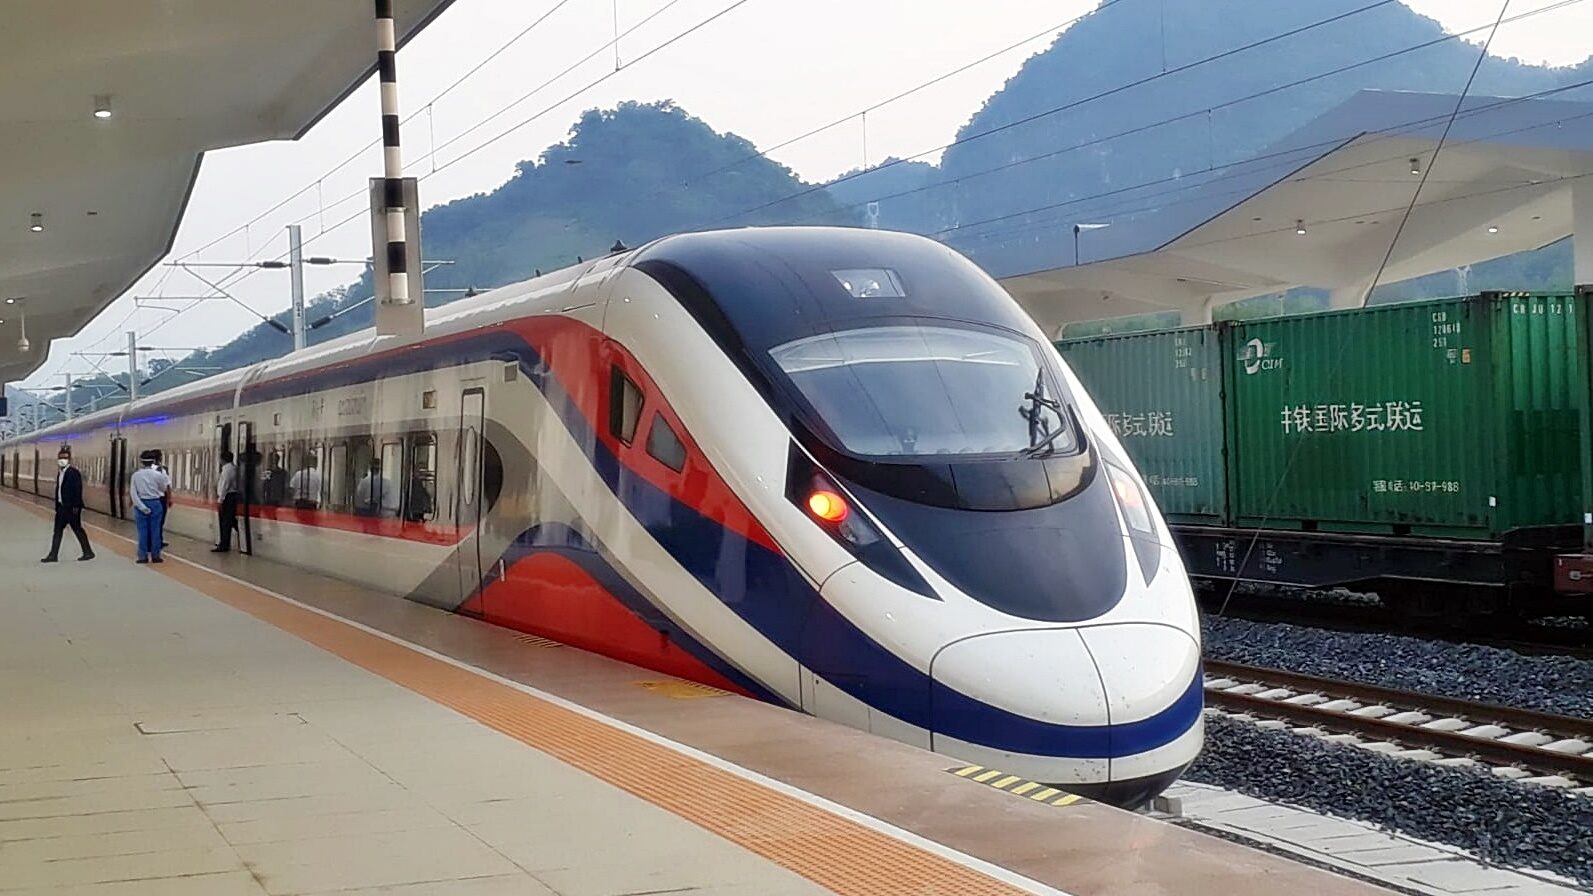 เปิดวิ่งเที่ยวปฐมฤกษ์ ‘รถไฟลาว-จีน’ จากเวียงจันไปเมืองคุนหมิง ยูนนาน